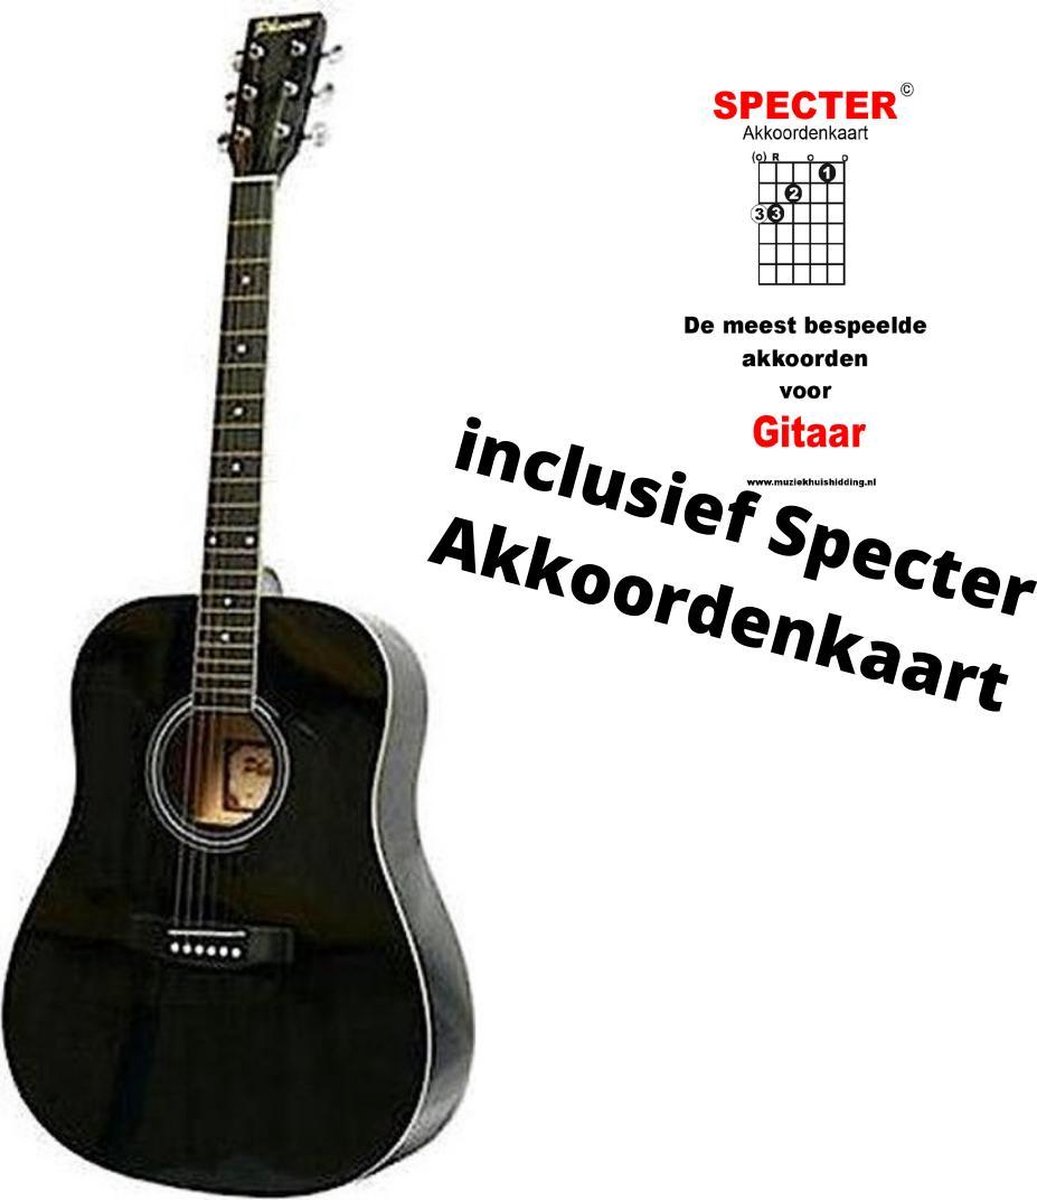 Akoestische Western gitaar Zwart met handige akkoordenkaart